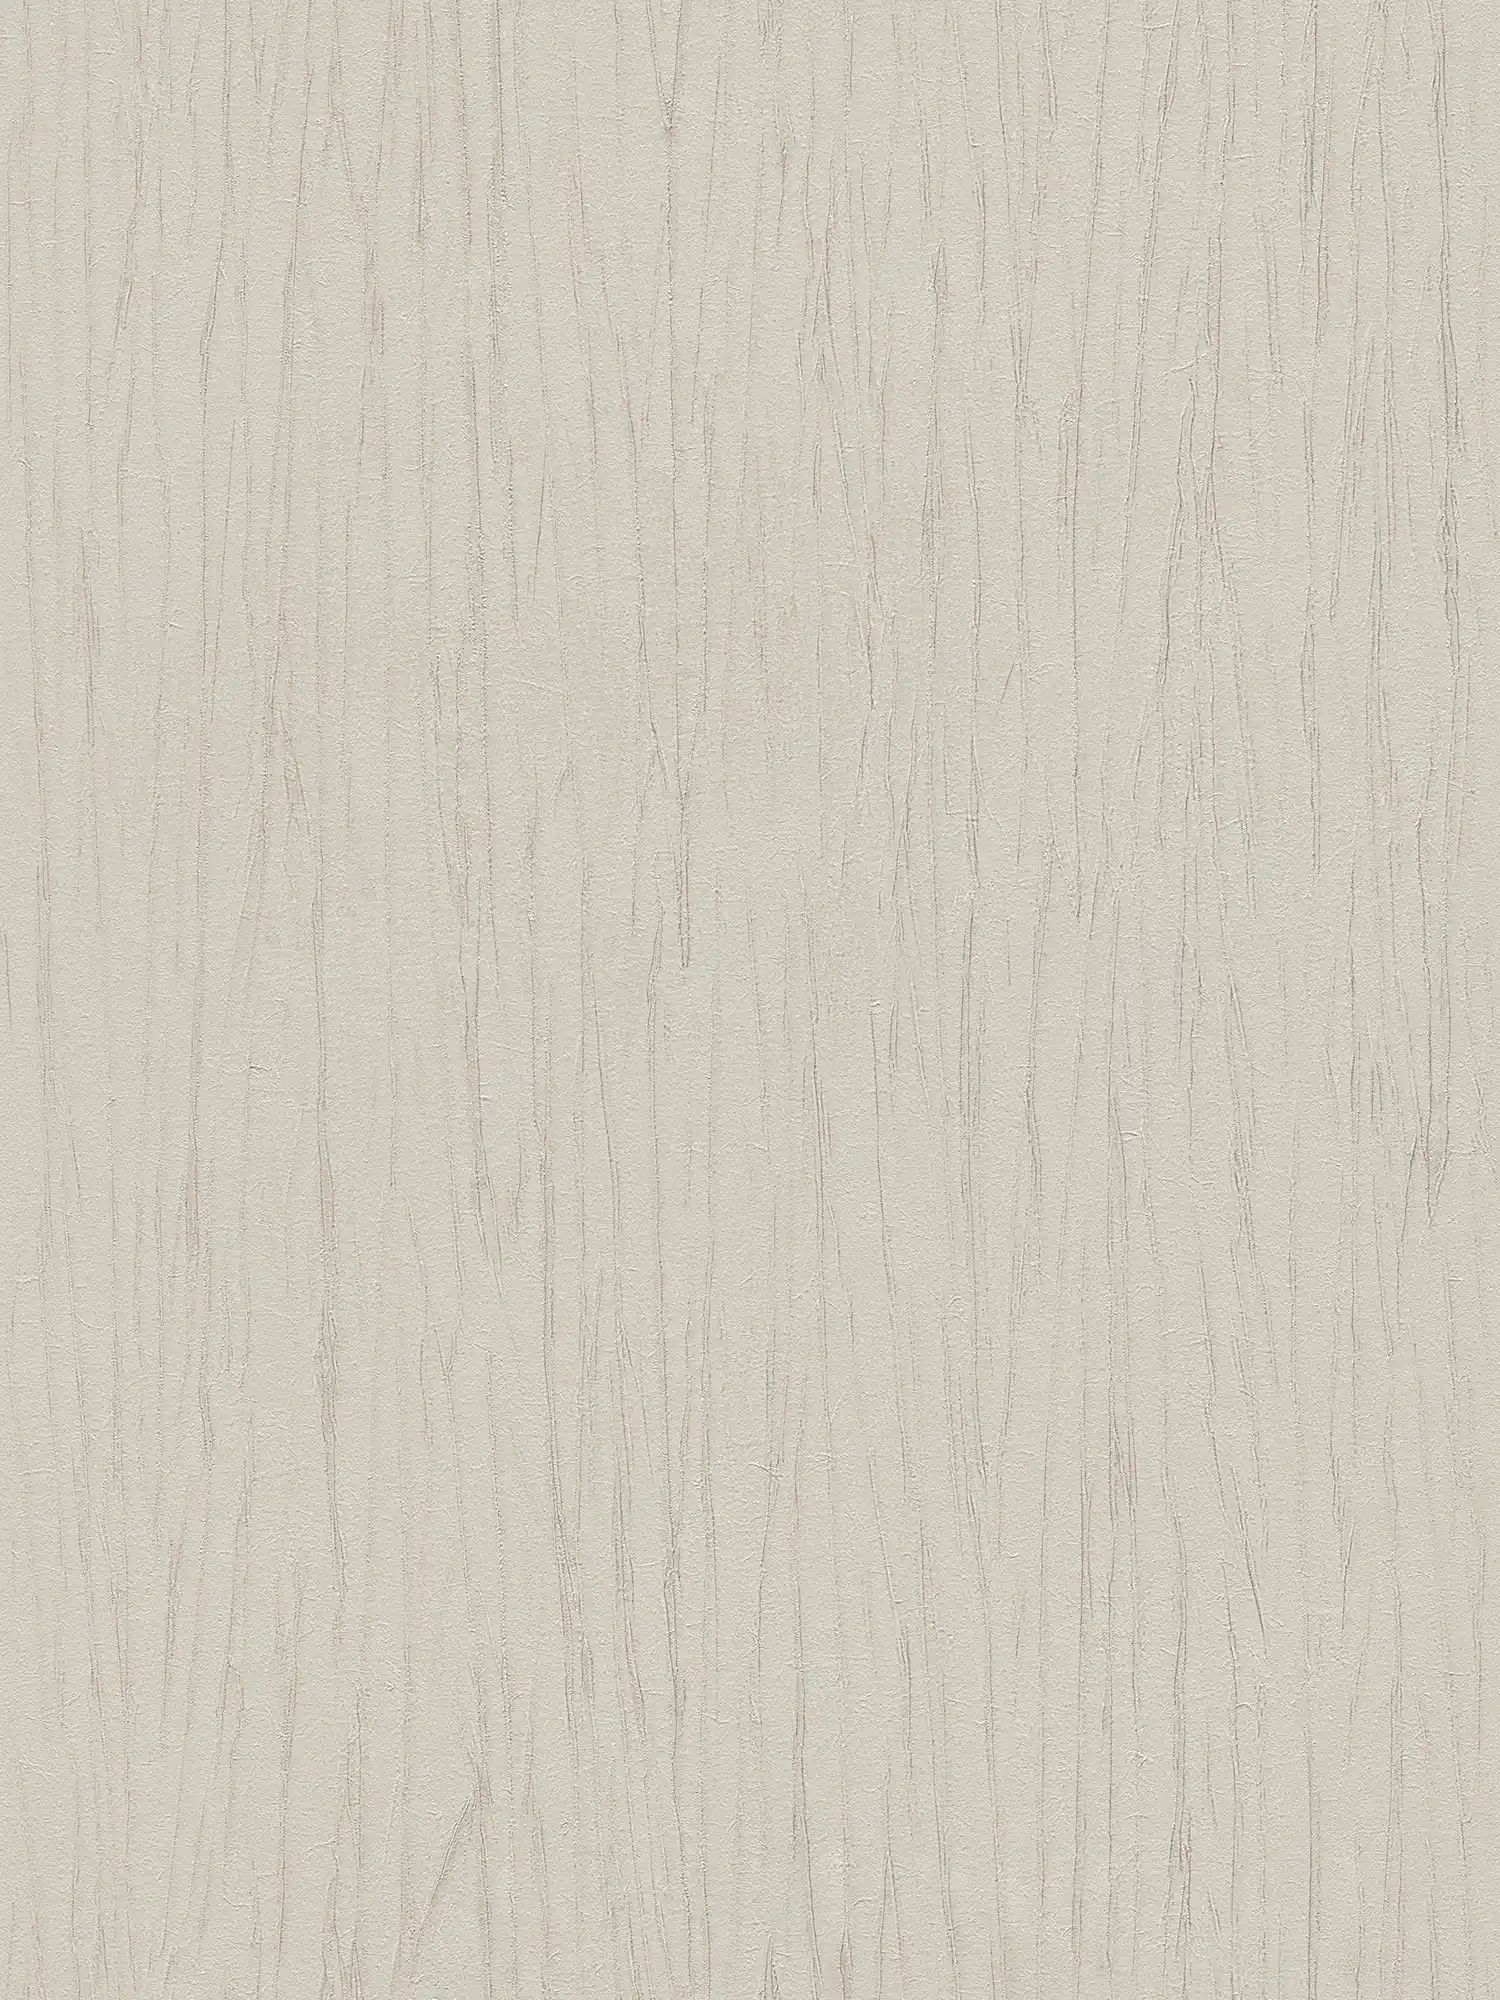 Wallpaper Crush structure & metallic effect - beige, grey
